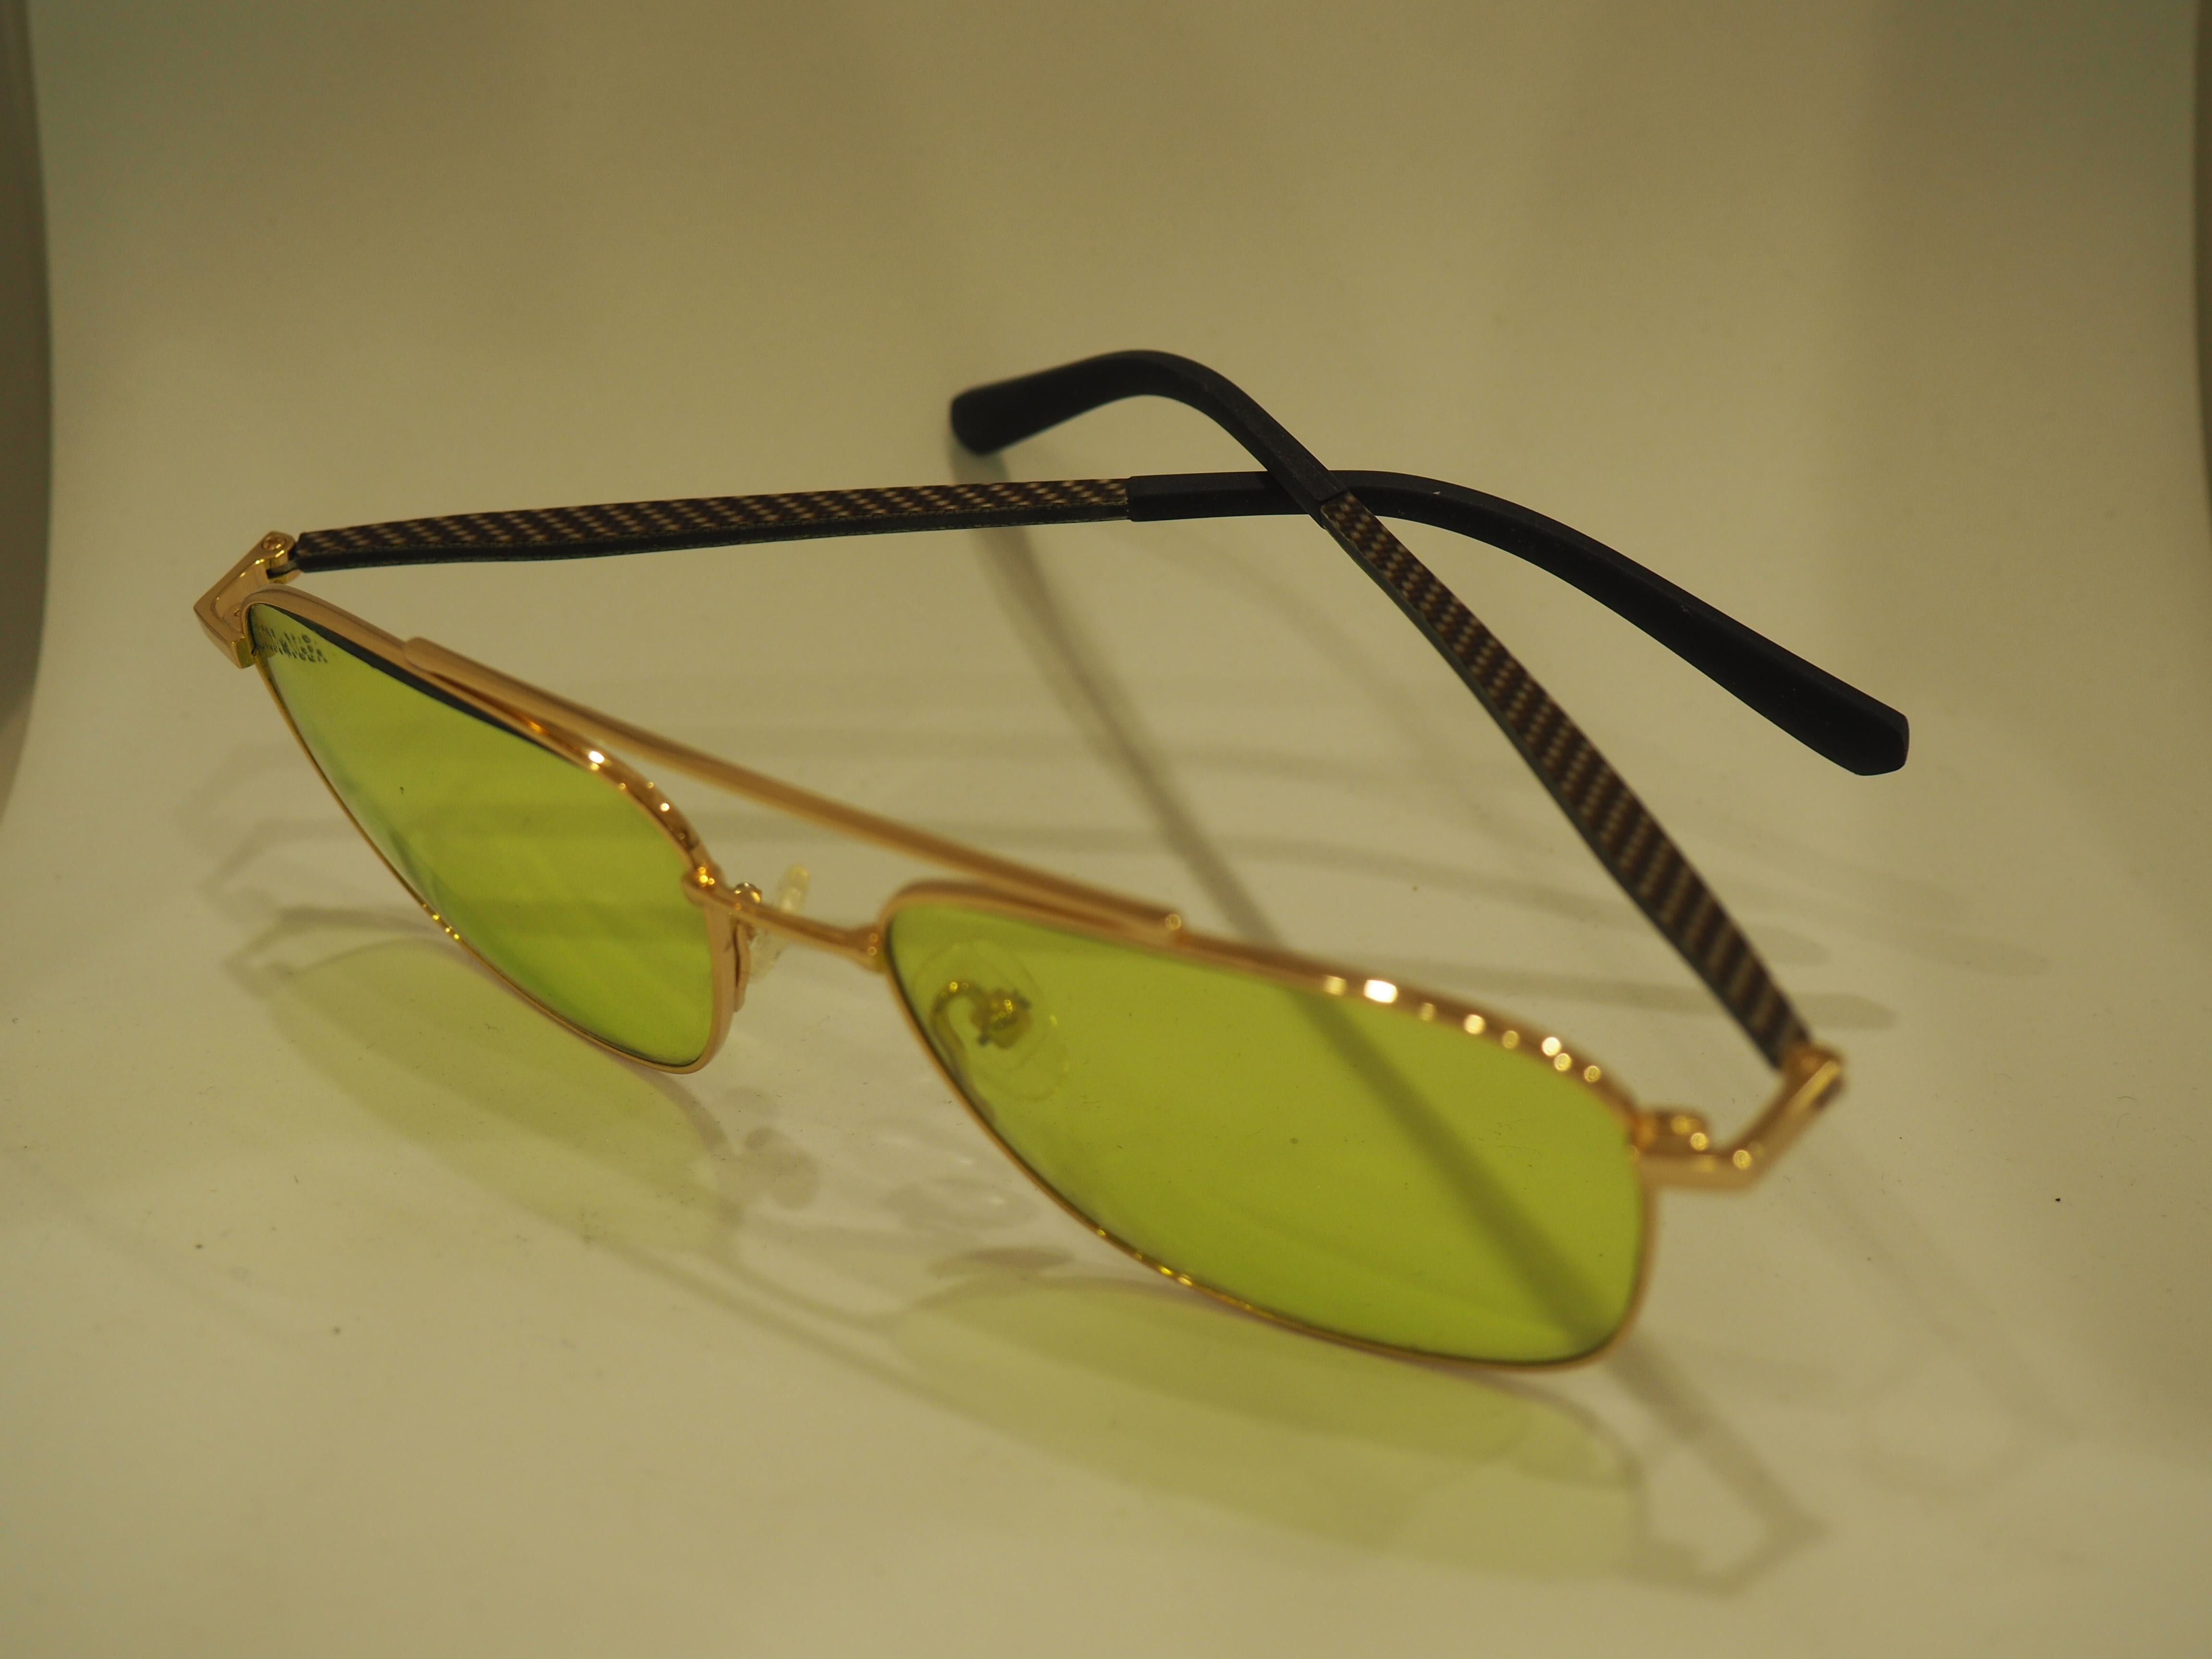 Kommafa green lenses sunglasses
totally handmade in italy
